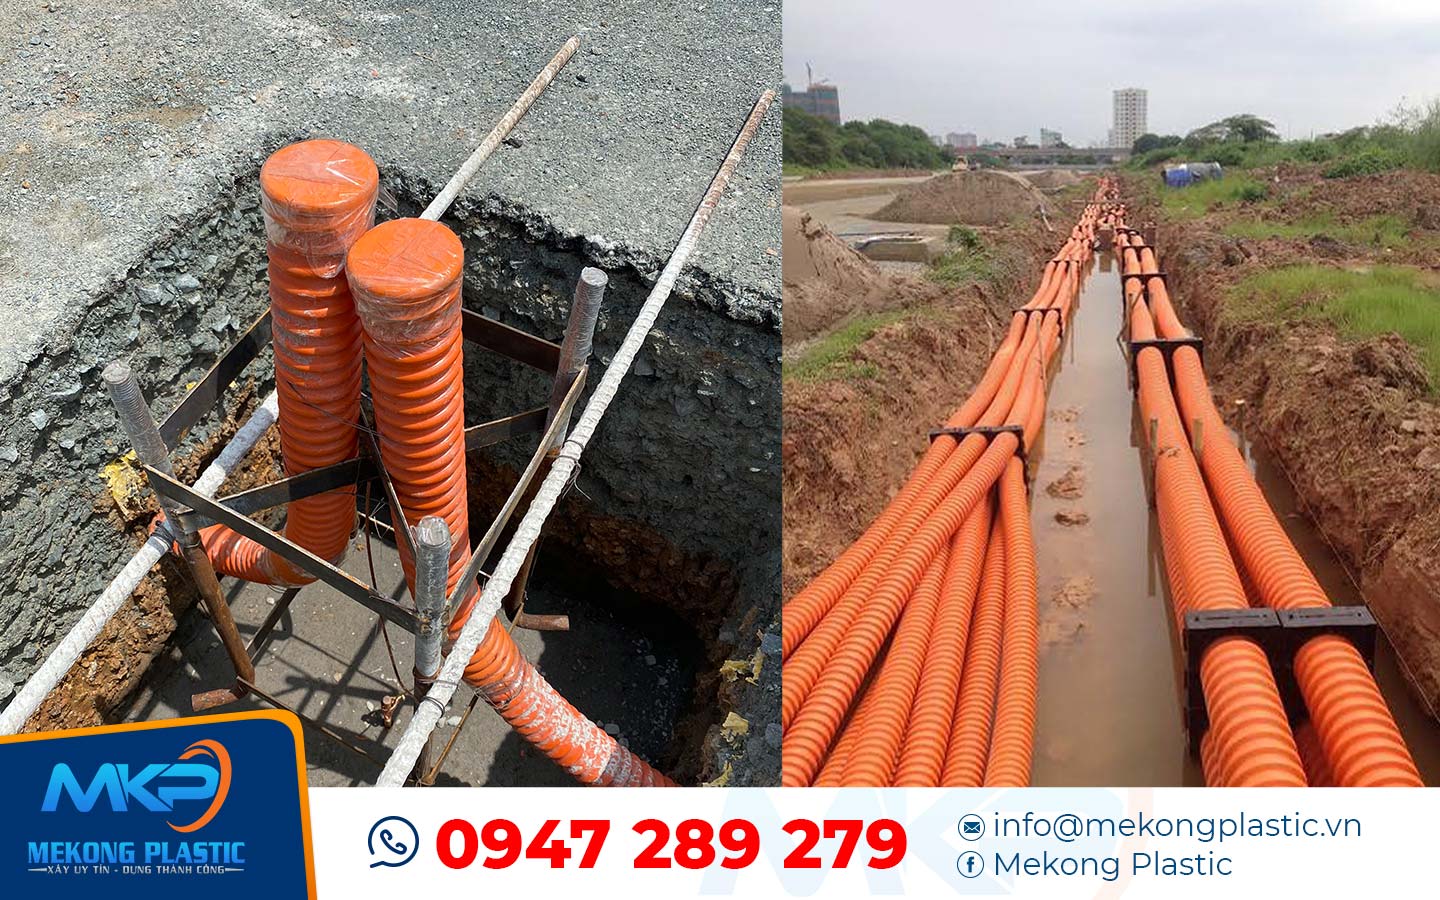 Tiêu chuẩn thi công cáp điện ngầm của ống nhựa xoắn luồn dây điện tại An Giang